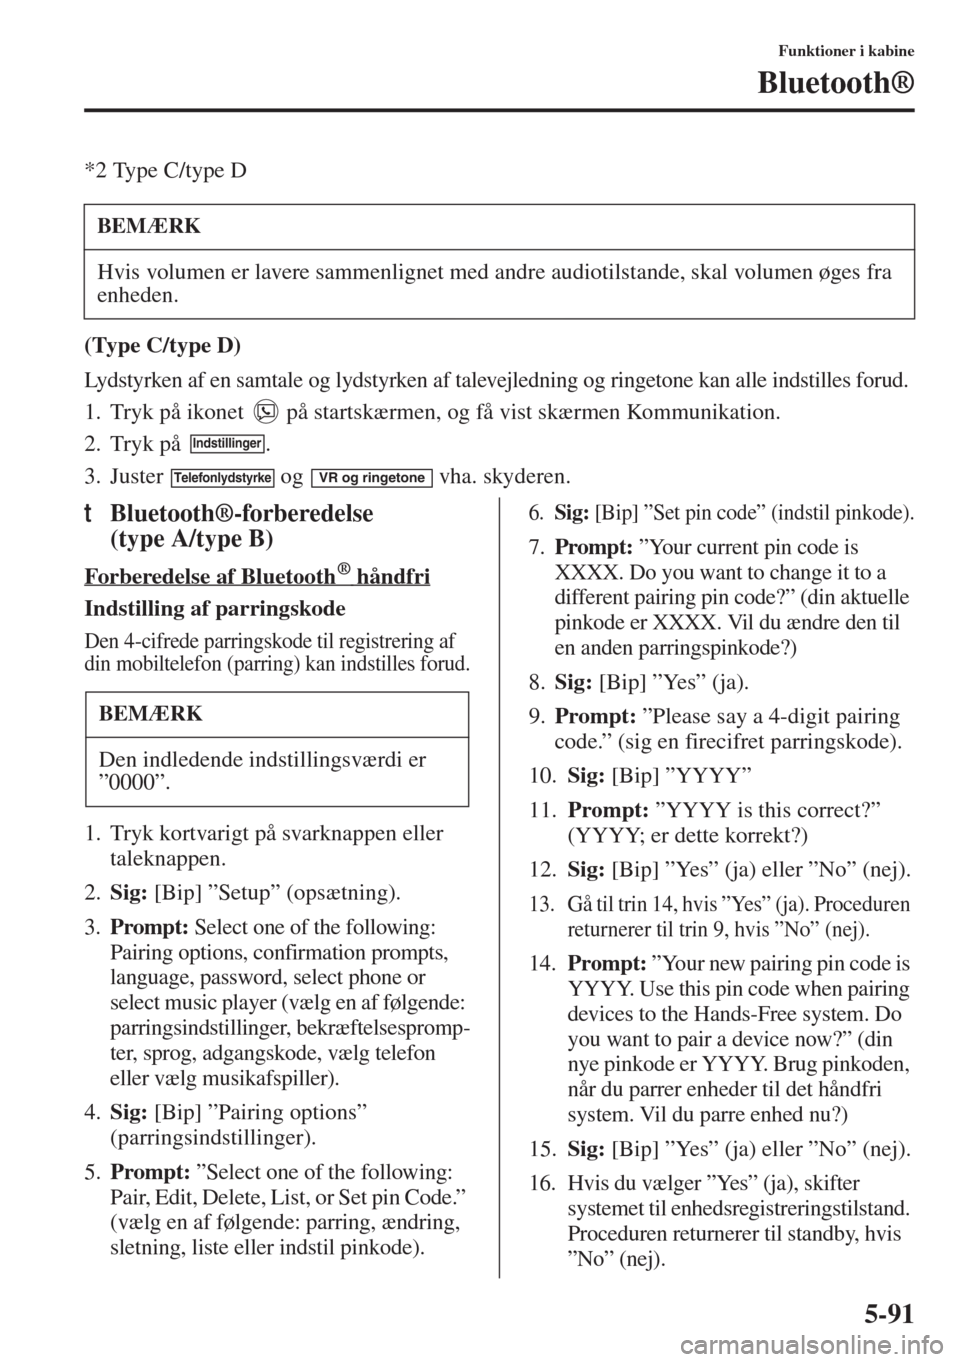 MAZDA MODEL 6 2015  Instruktionsbog (in Danish) 5-91
Funktioner i kabine
Bluetooth®
*2 Type C/type D
(Type C/type D)
Lydstyrken af en samtale og lydstyrken af talevejledning og ringetone kan alle indstilles forud.
1. Tryk på ikonet   på startsk�